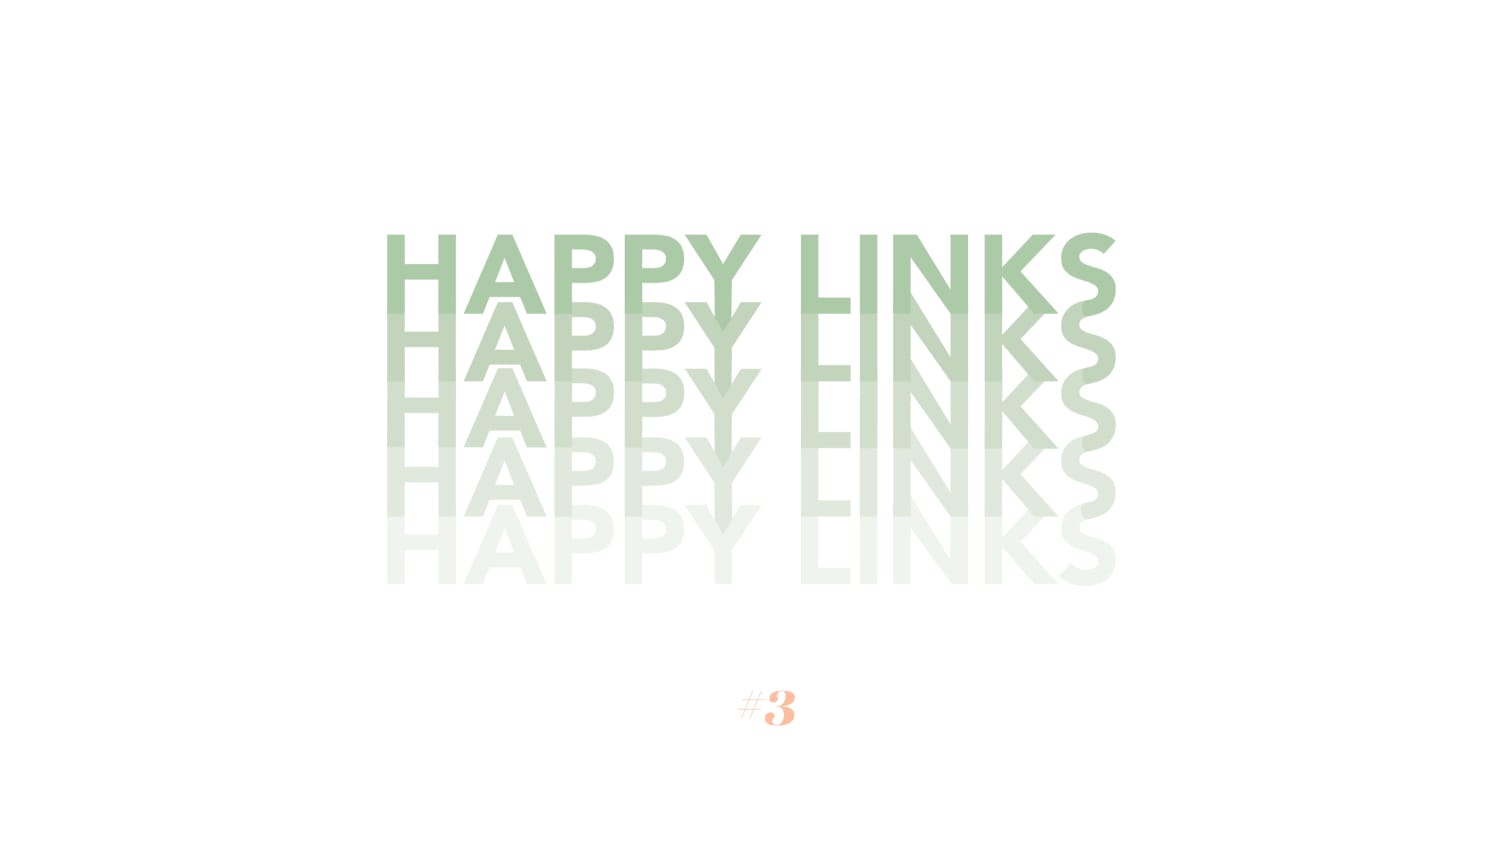 The Happy Links #3